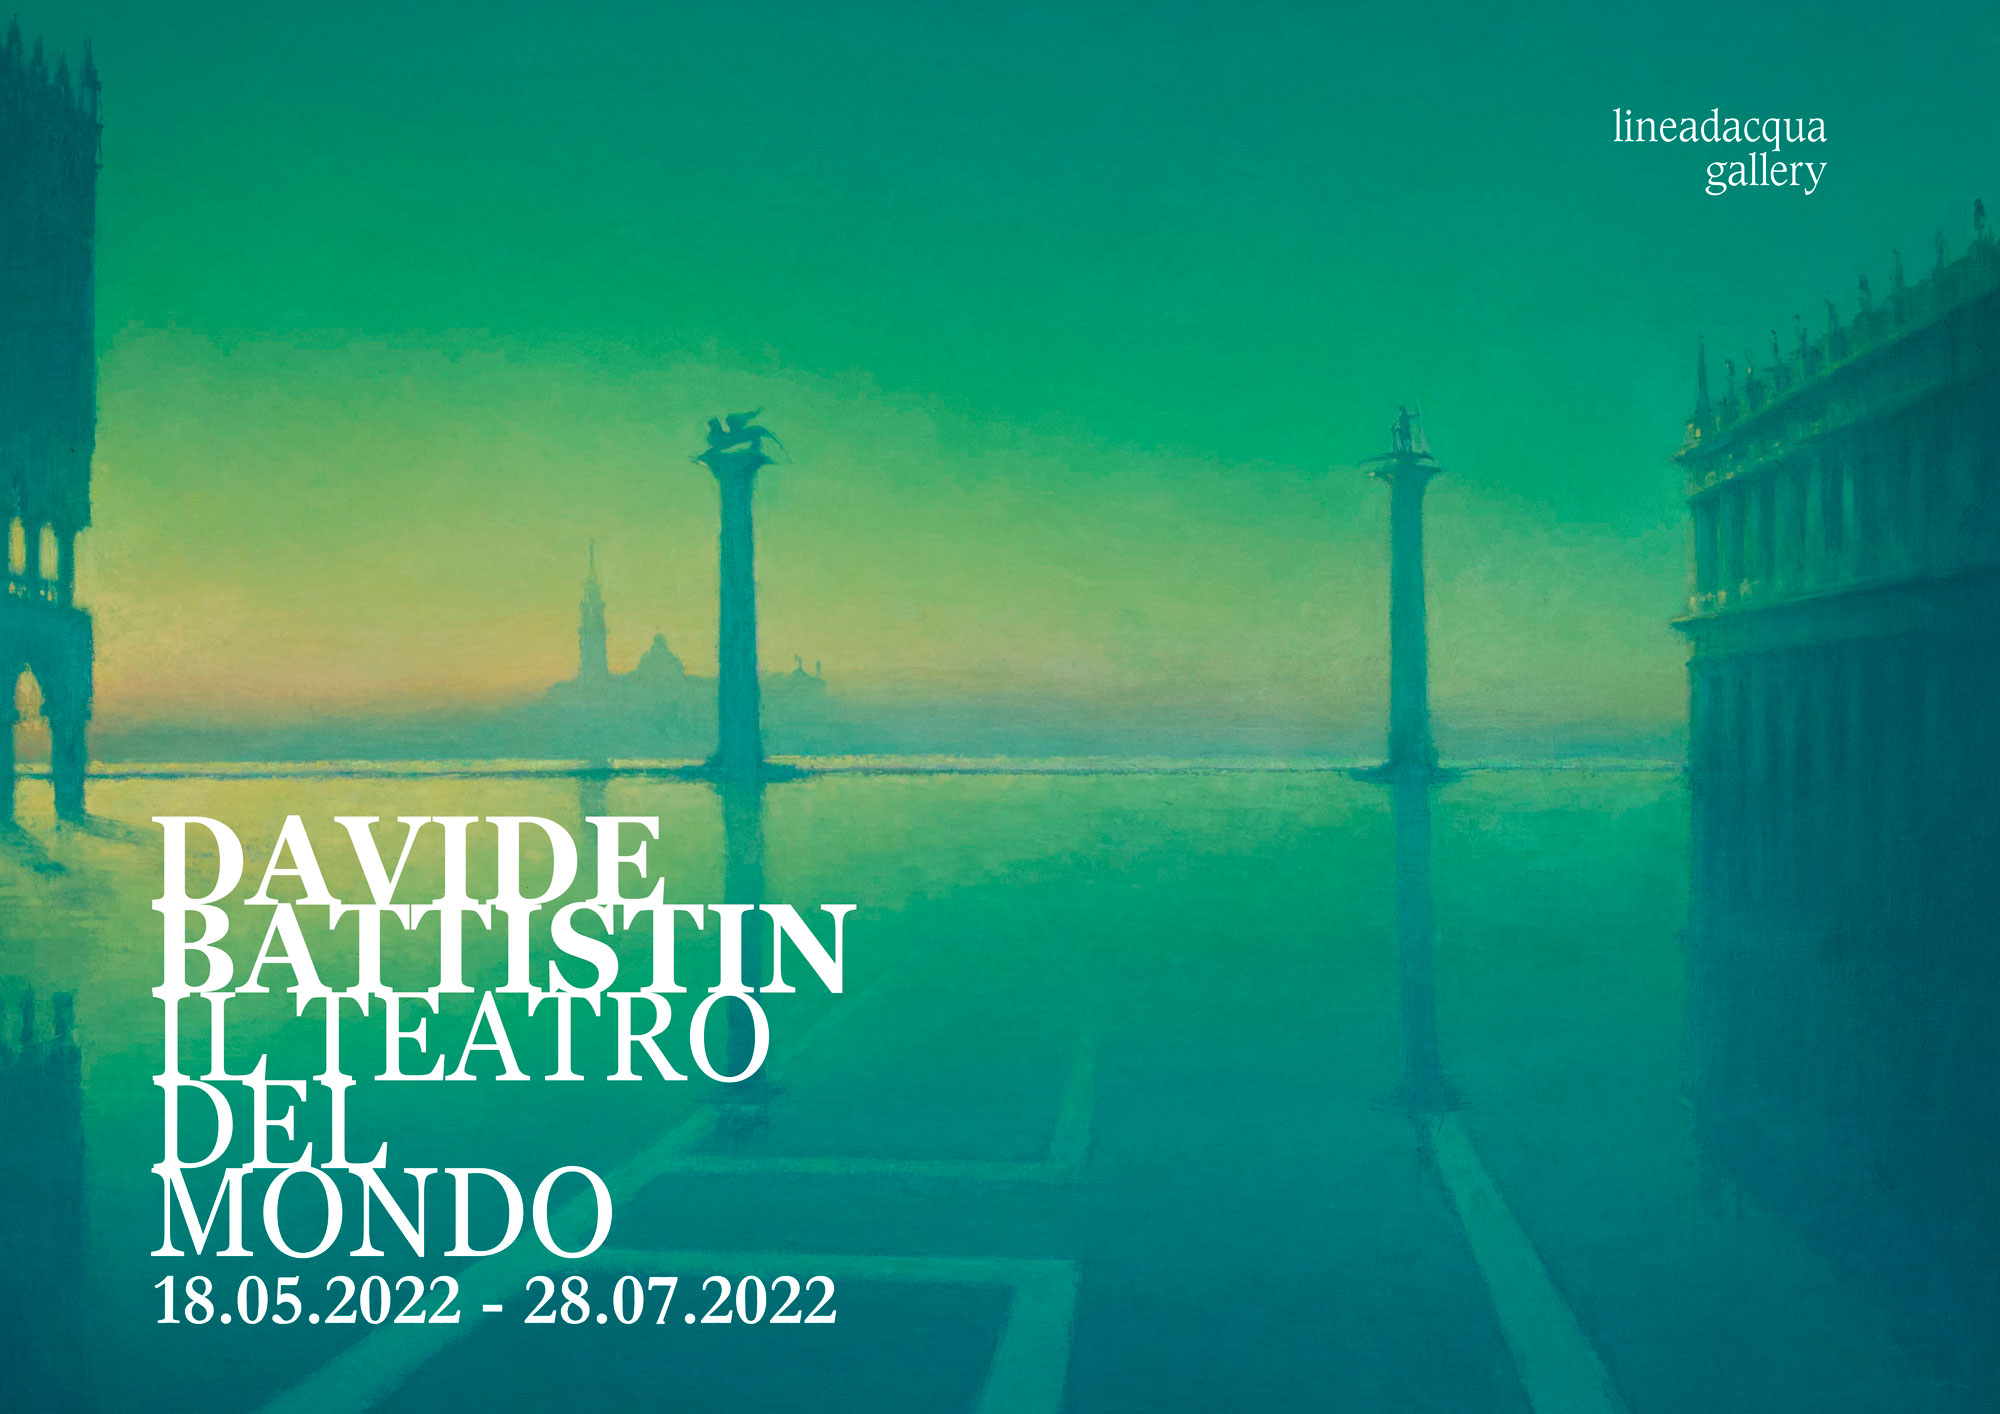 Beyond The Horizon - Fondazione Querini Stampalia